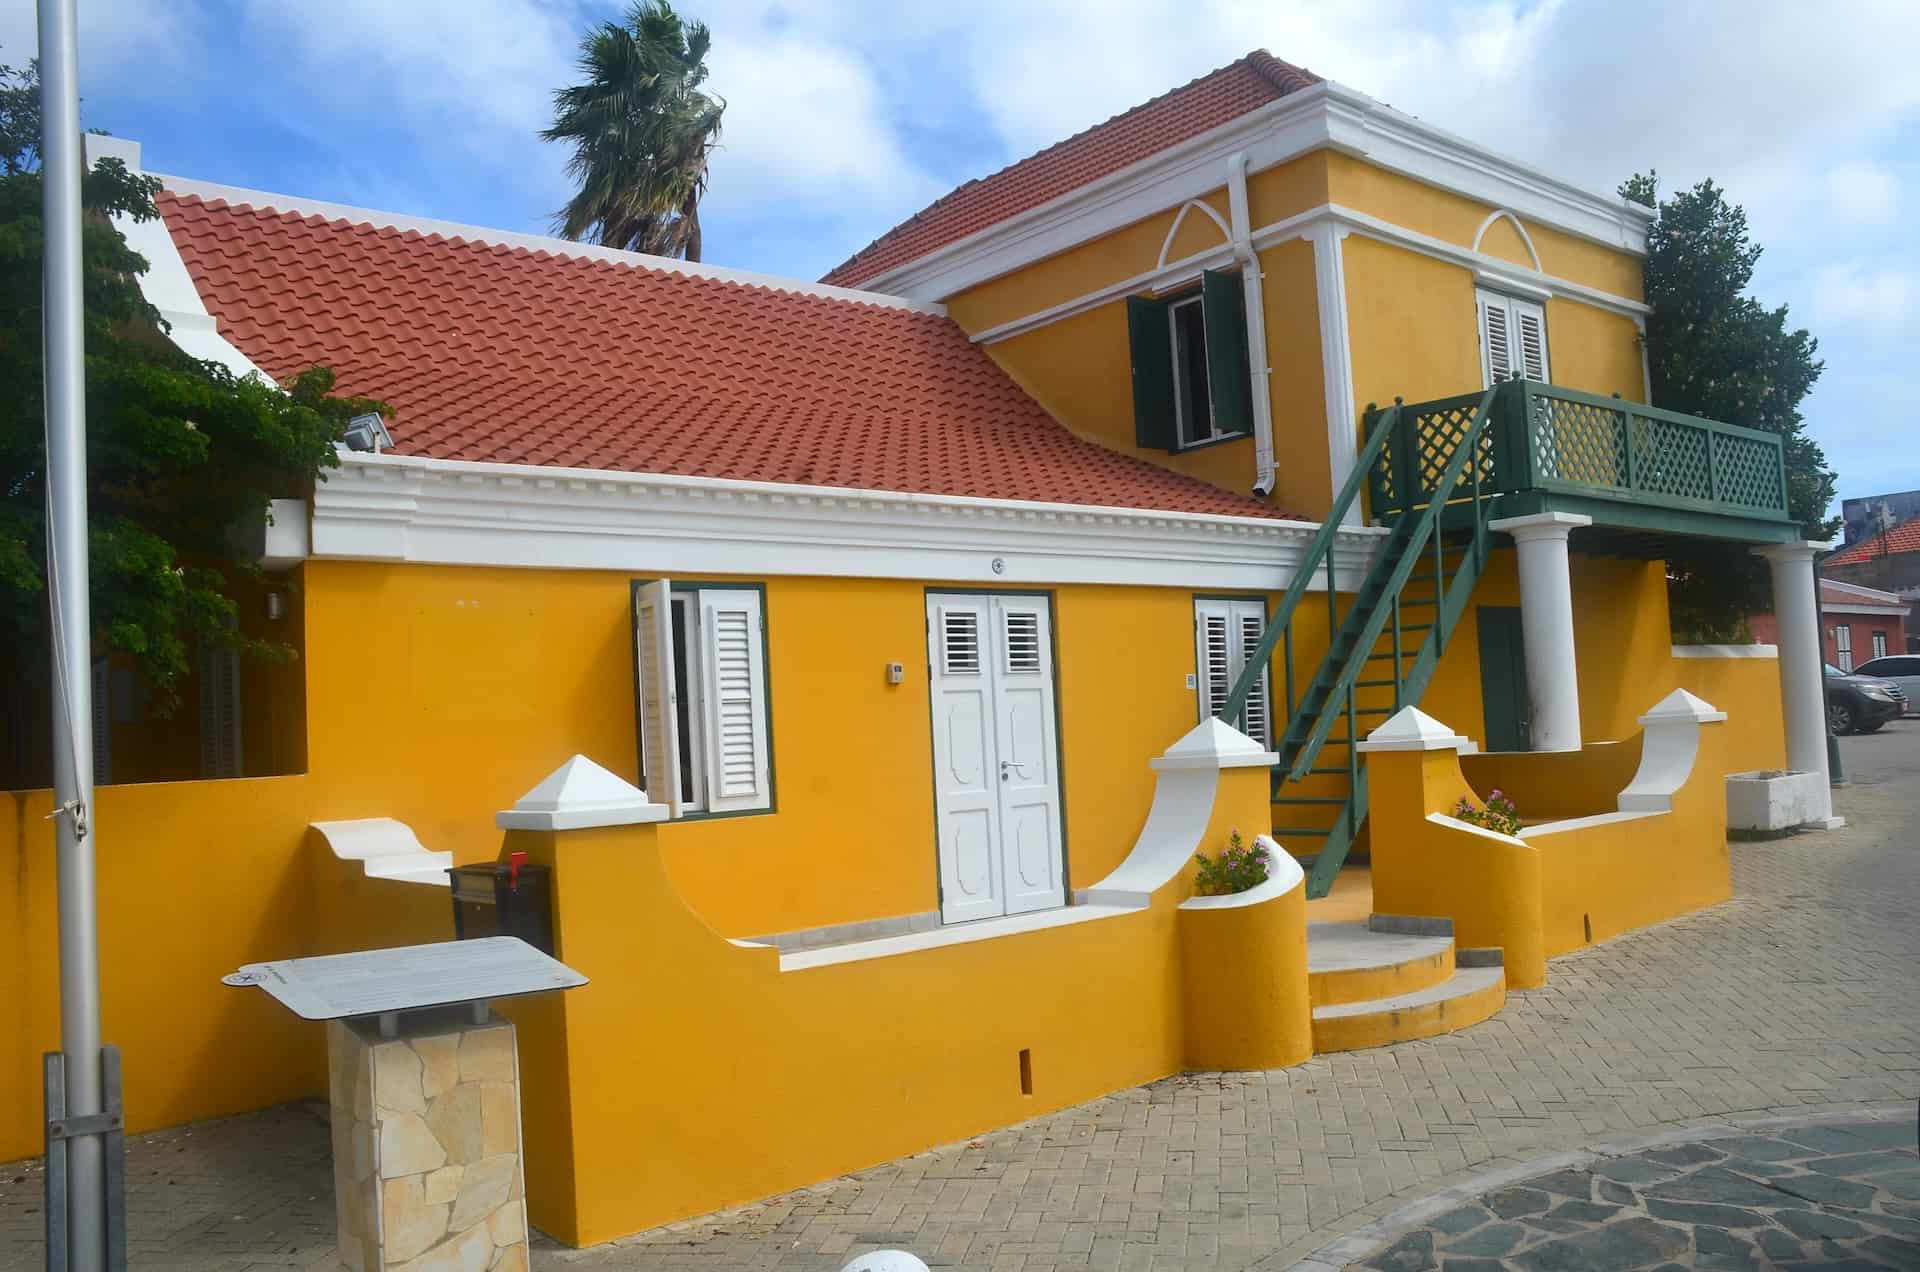 Henriquez Building in Oranjestad, Aruba